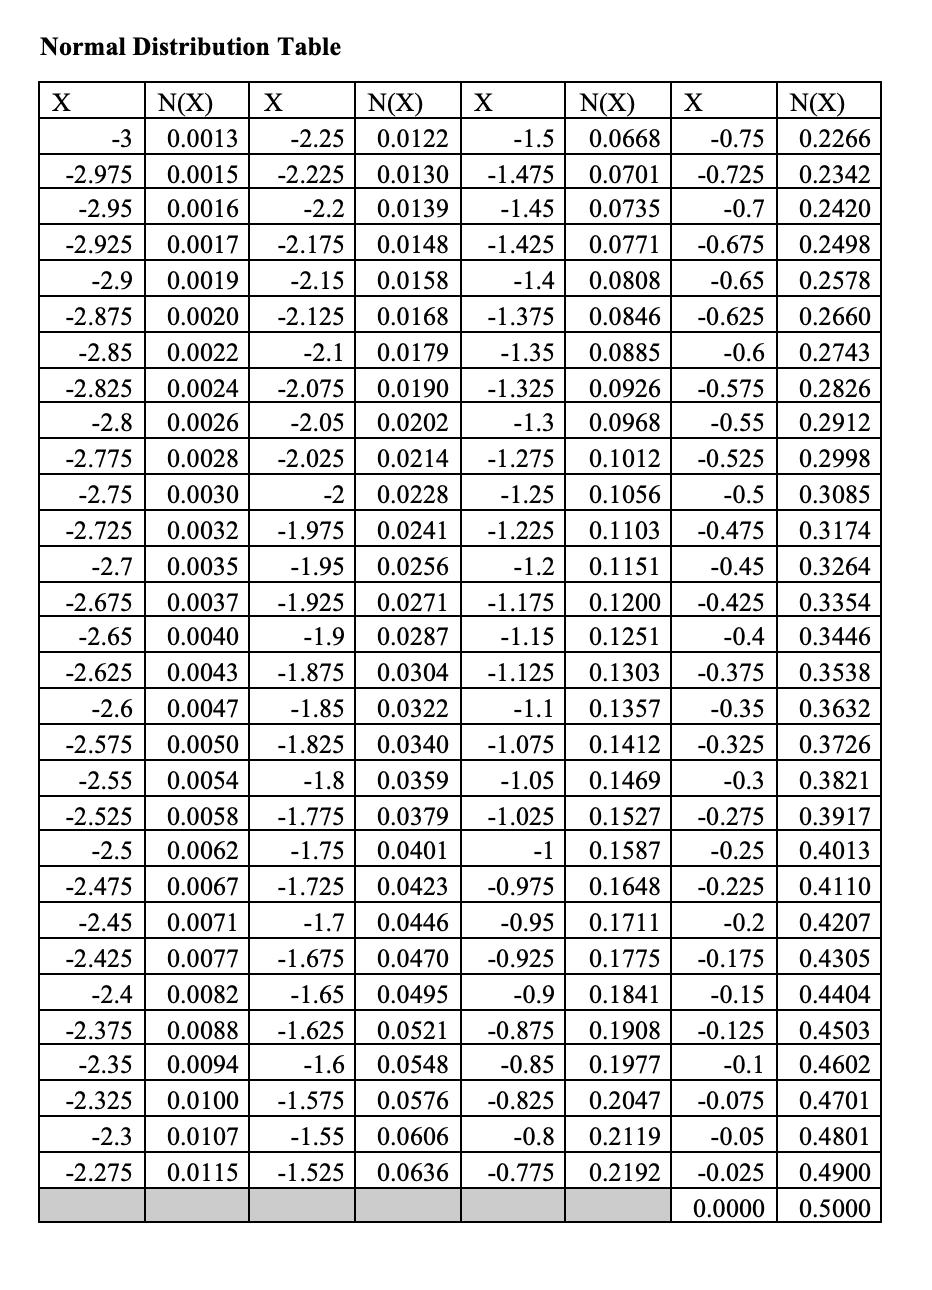 Normal Distribution Table X X X N(X) 0.2266 N(X) 0.0122 0.0130 0.0139 0.0148 0.0158 0.0168 0.0179 0.0190 0.0202 0.0214 0.0228